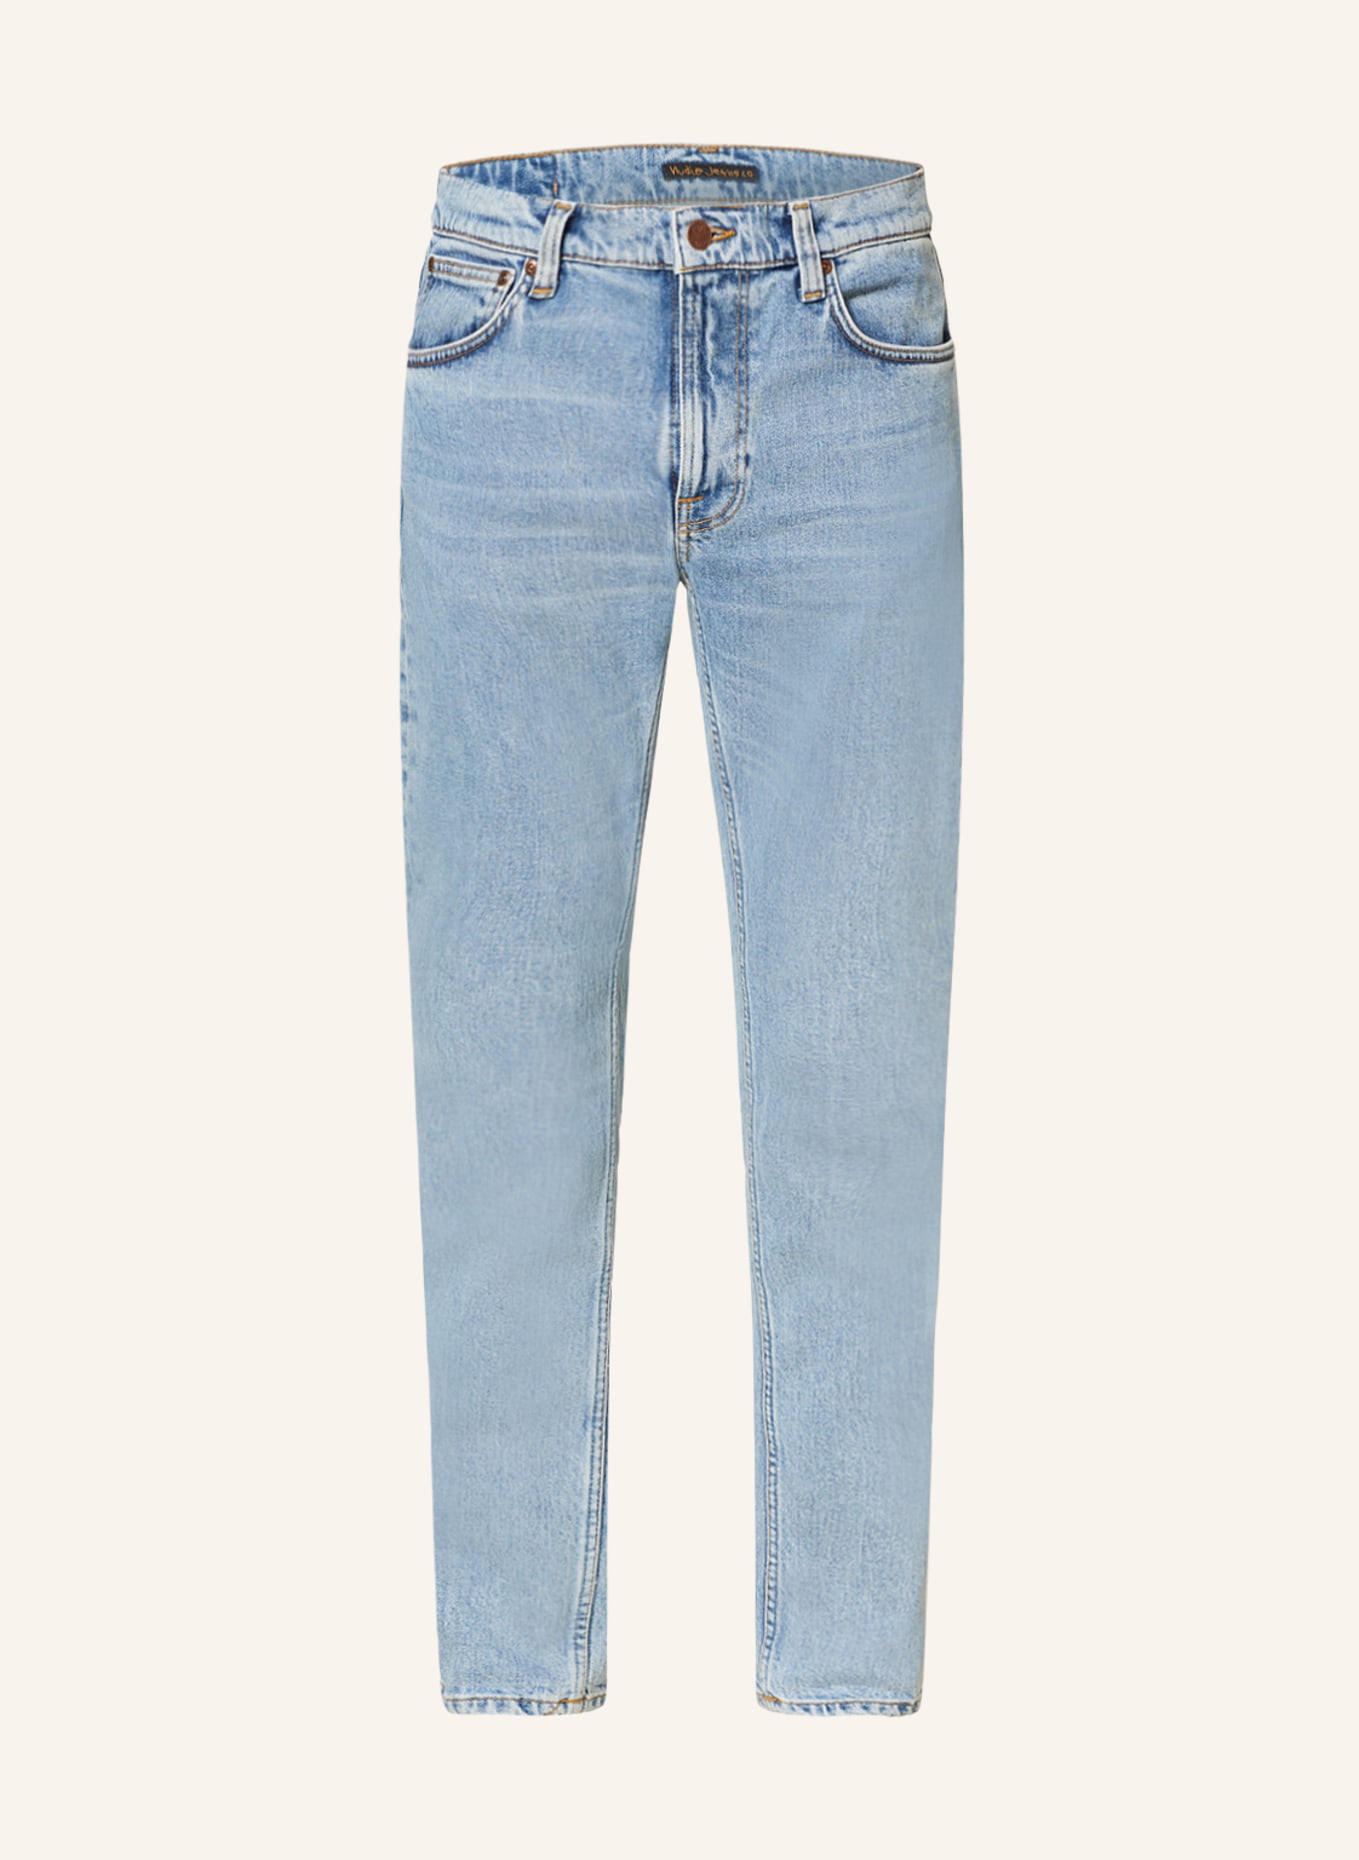 Nudie Jeans Jeans LEAN DEAN, Color: Calm Blues (Image 1)